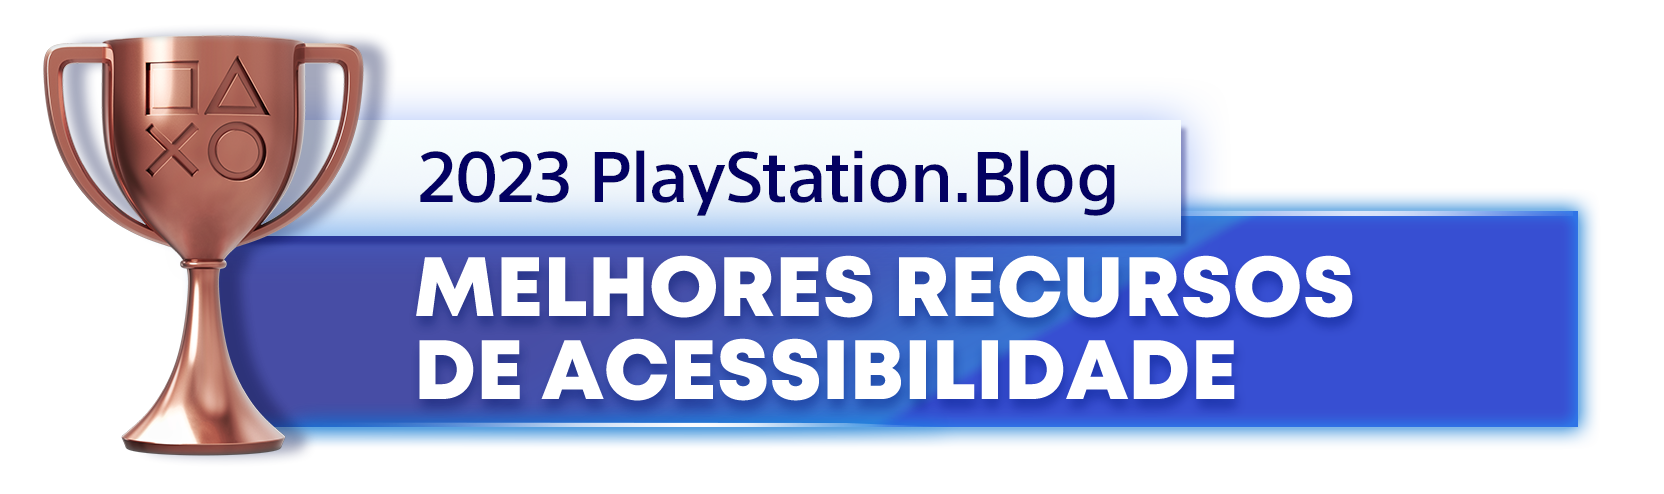  "Troféu de Bronze para o vencedor da categoria Melhores Recursos de Acessibilidade de 2023 do PlayStation Blog"